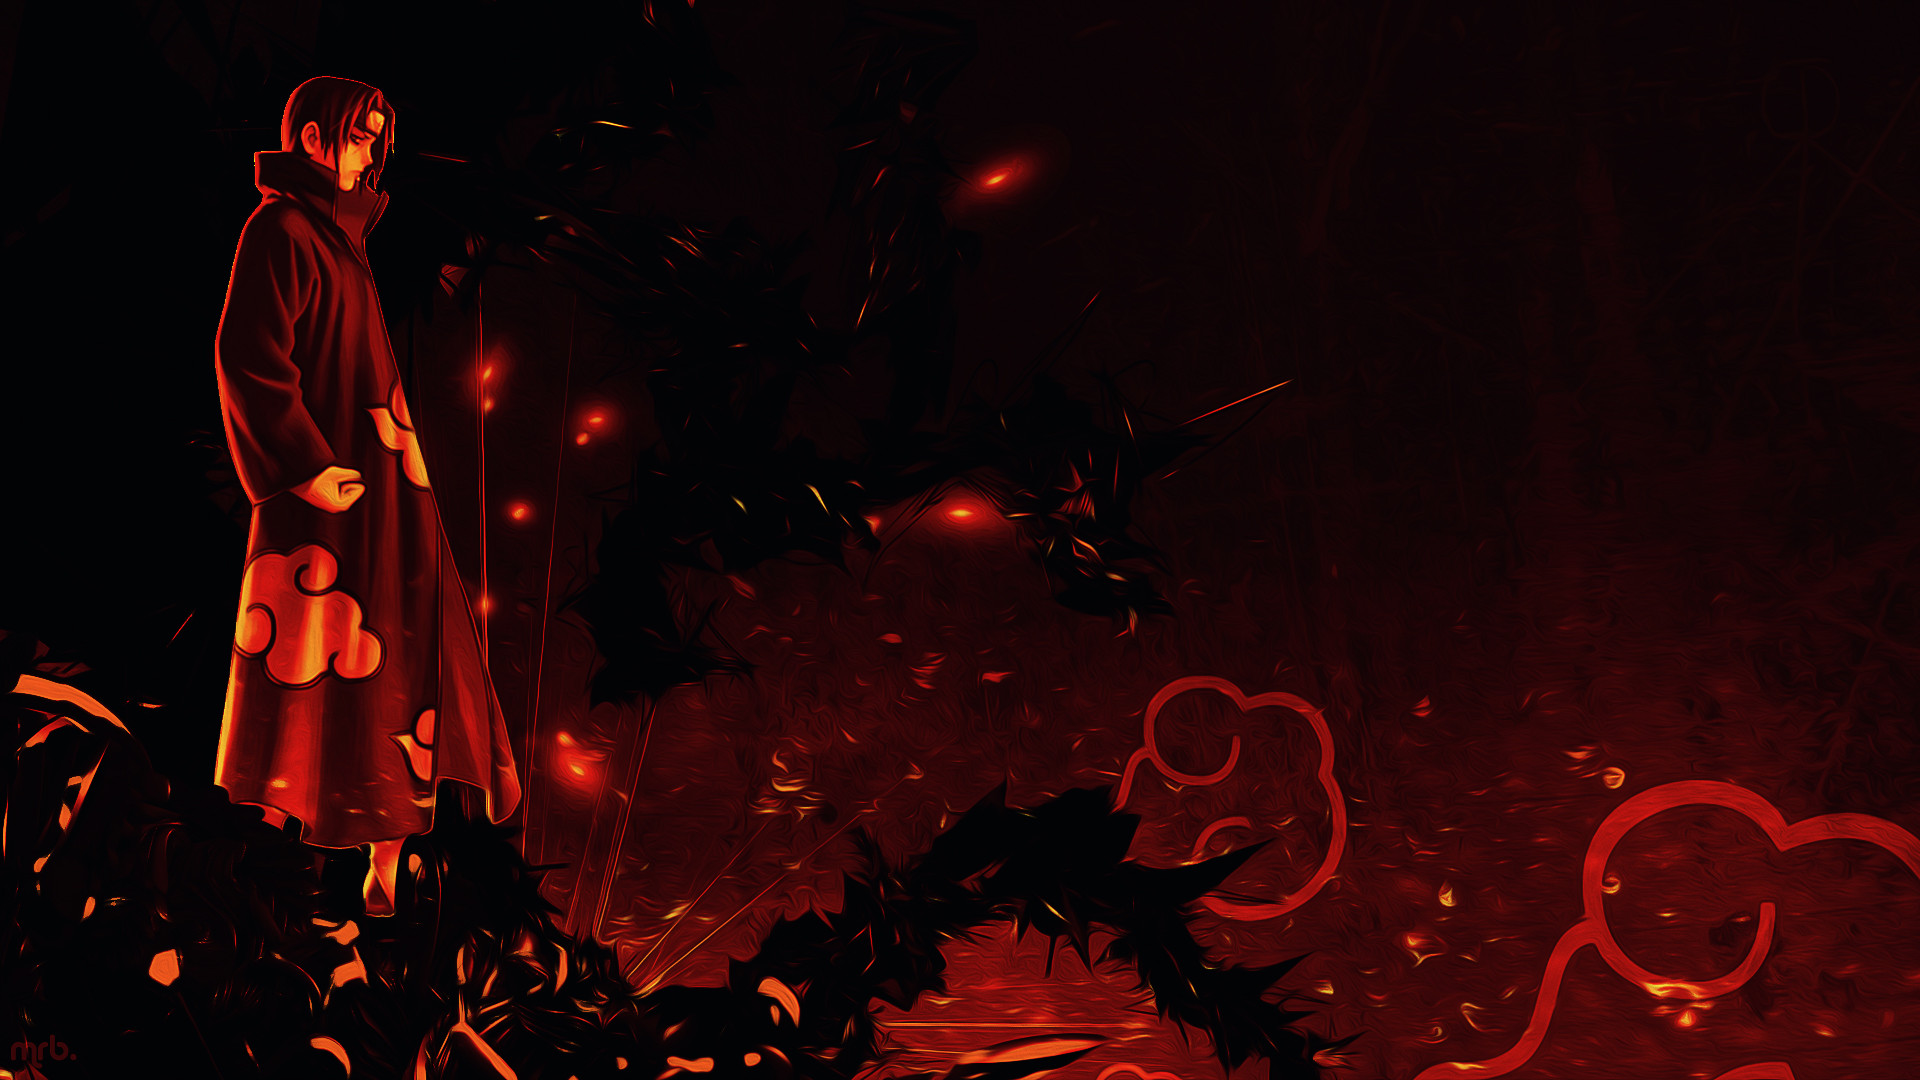 아카츠키 배경 화면 1920x1080,빨간,어둠,삽화,열,cg 삽화